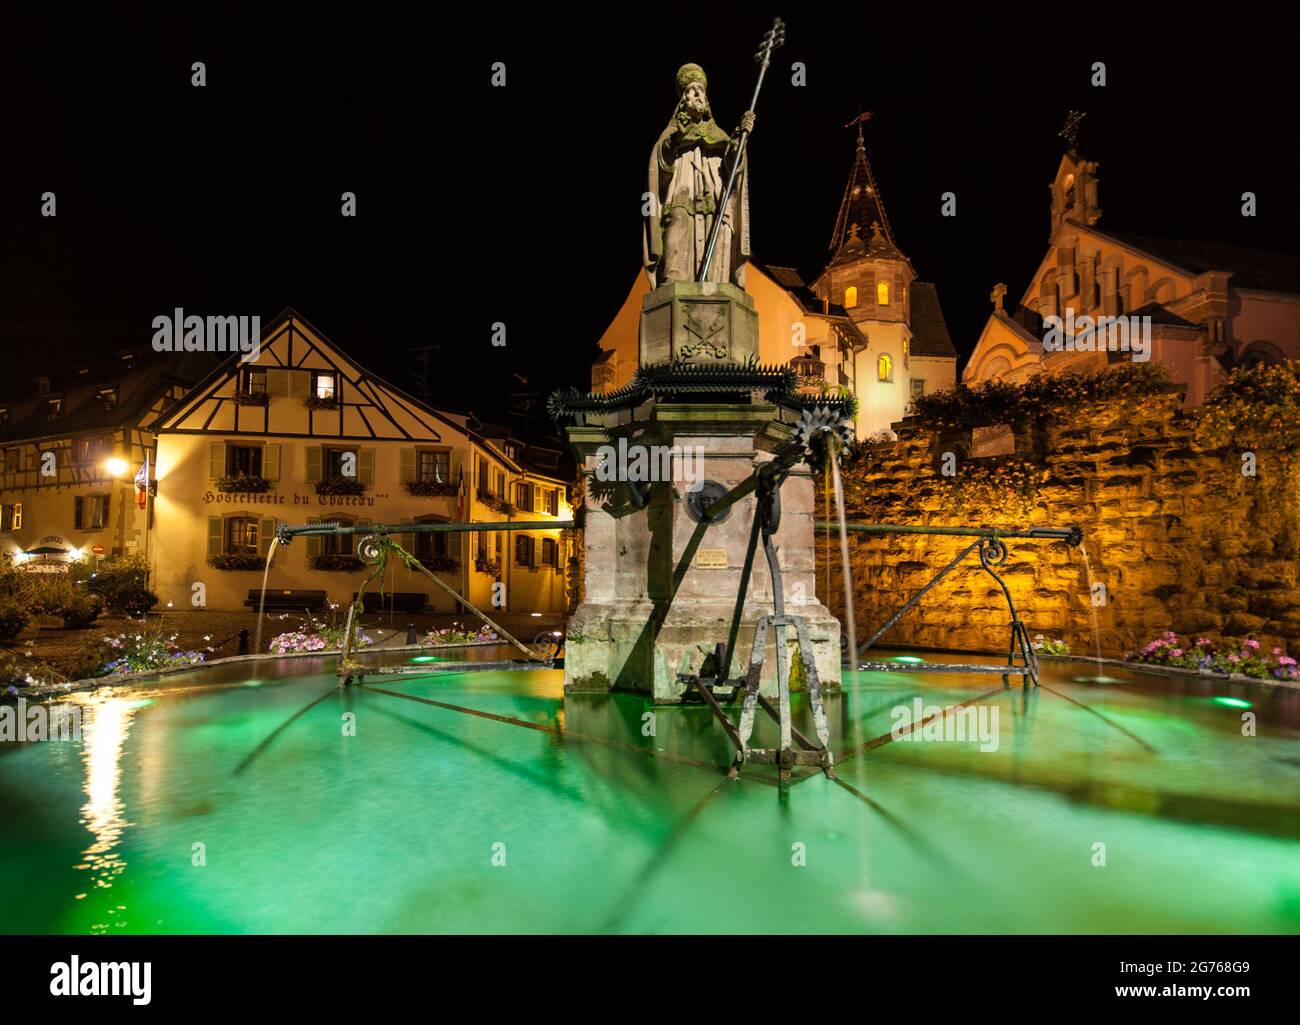 Eguisheim di notte: Statua di Papa Leone IX. (1002-1054) nella piazza del castello nella sua città natale, il villaggio dei viticoltori di Eguisheim nella regione Alsazia. Foto Stock